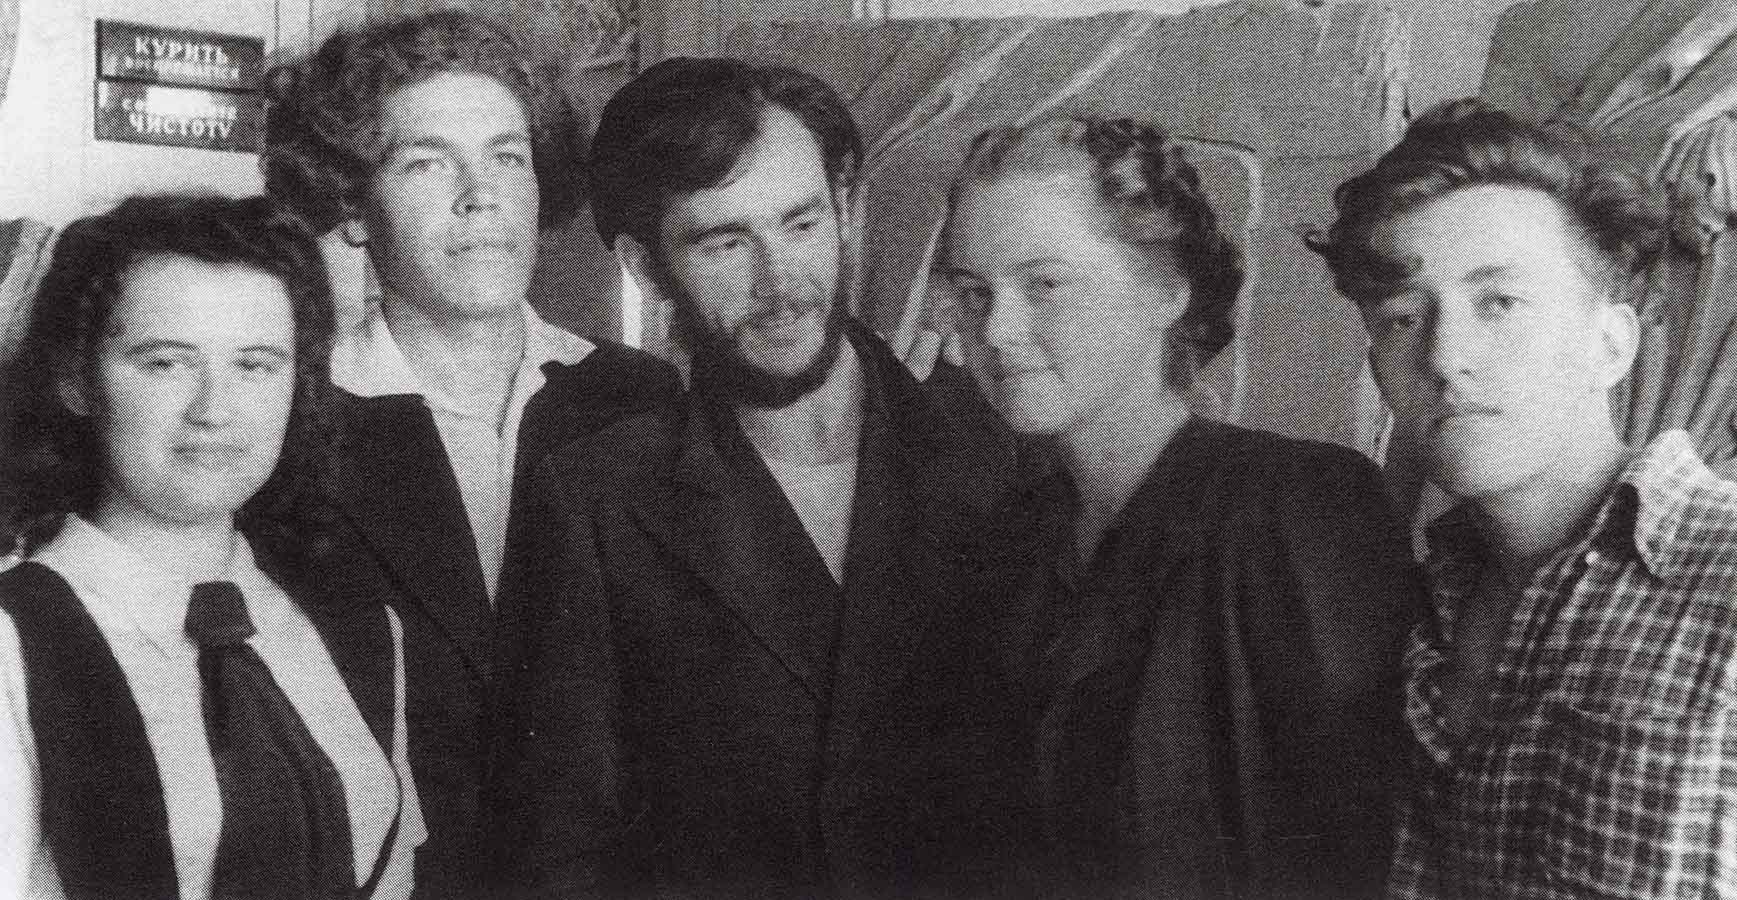 Т. Дроздова, Ю. Орехов, В. Бодров, Т. Соколова, И. Дараган во время учебы в Строгановском институте, 1947